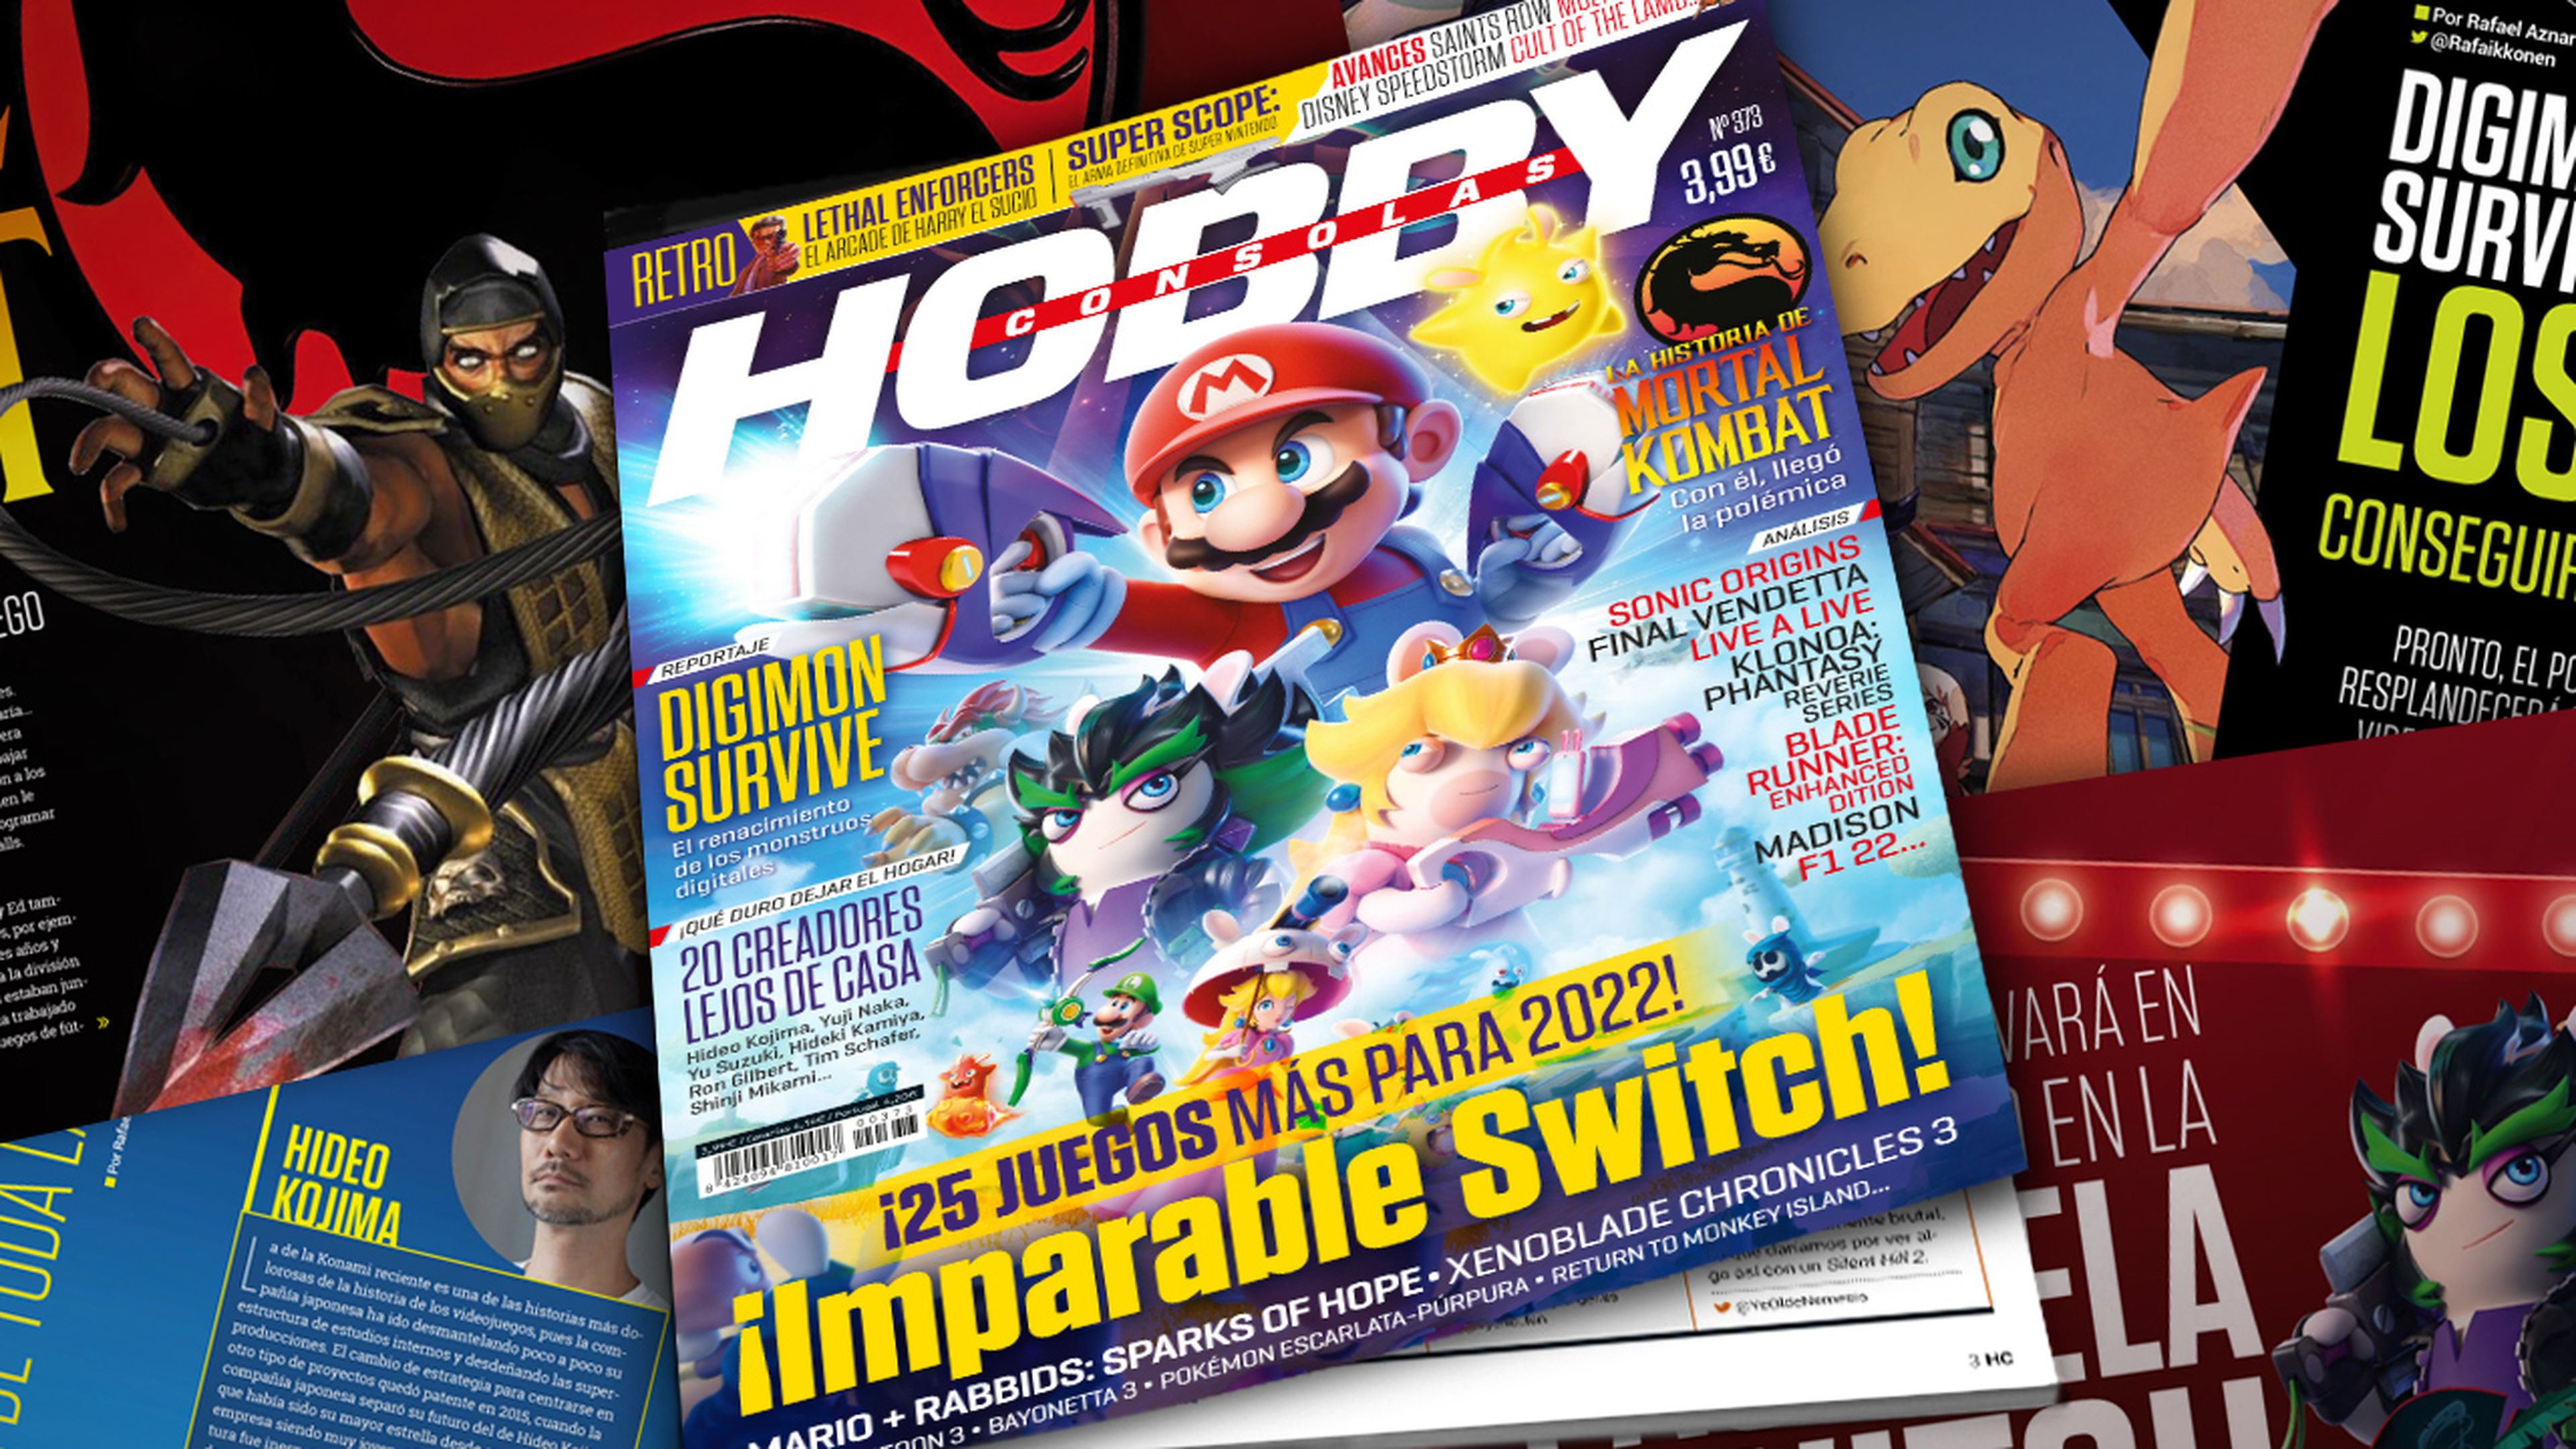 Hobby Consolas 373, a la venta con Mario + Rabbids: Sparks of Hope en portada